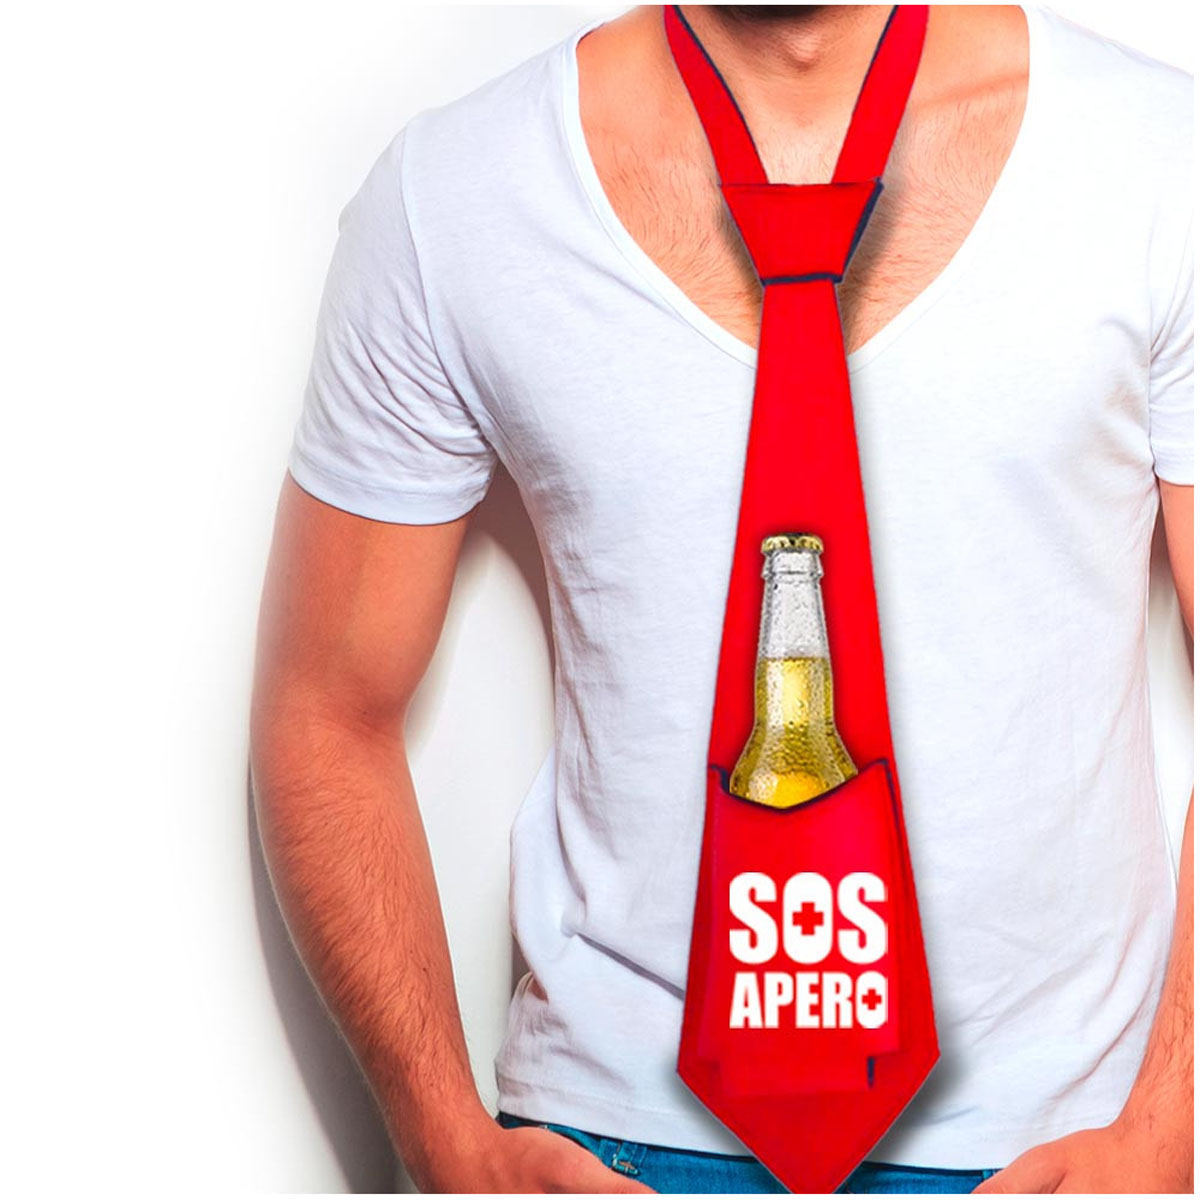 Cravate anti-soif \'SOS Apero\' rouge - [A2700]